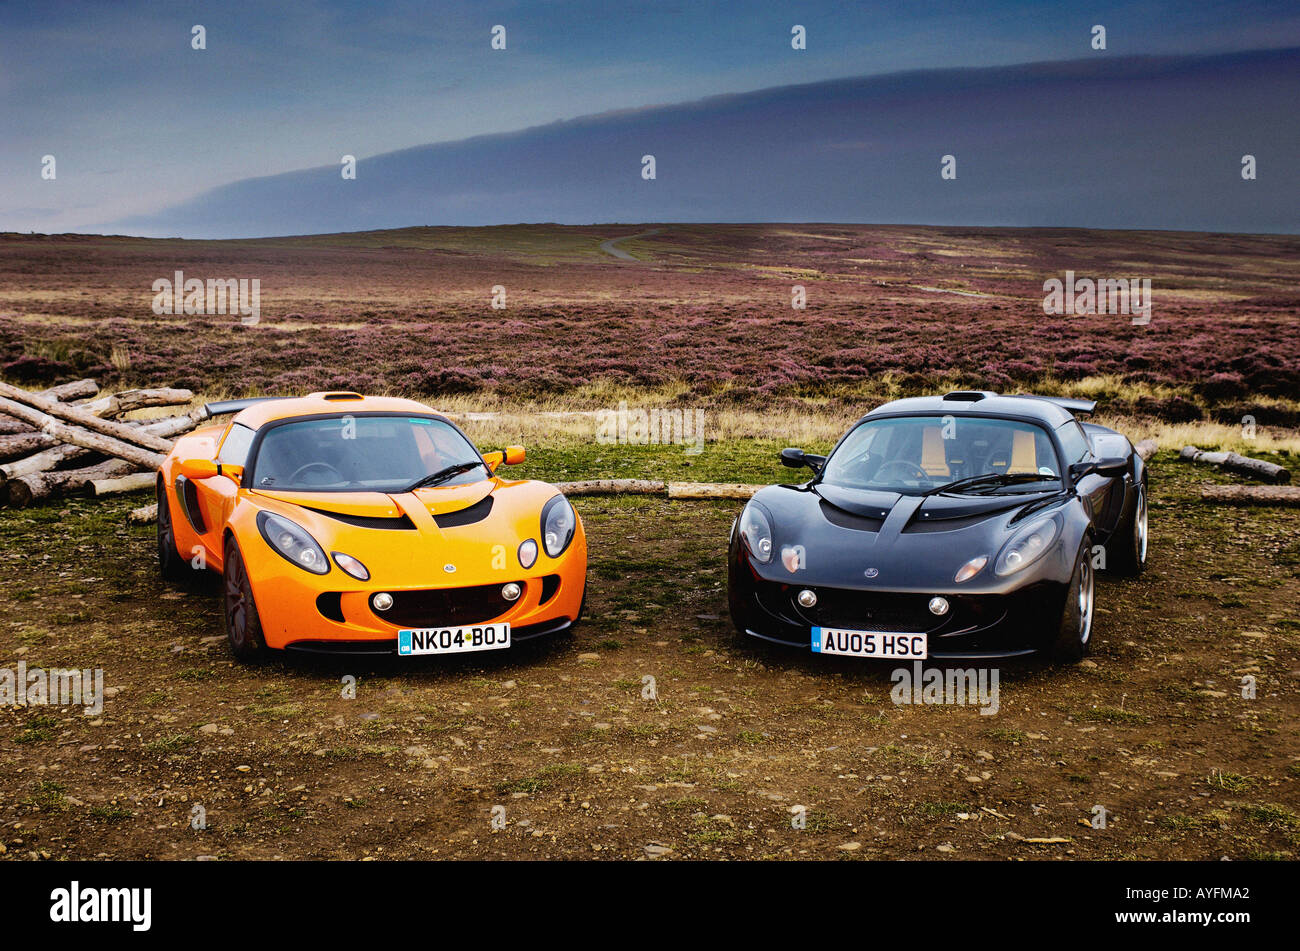 Deux voitures Lotus exige, une orange et une noire garées côte à côte avec le paysage spectaculaire des North Yorkshire Moors au loin. Banque D'Images